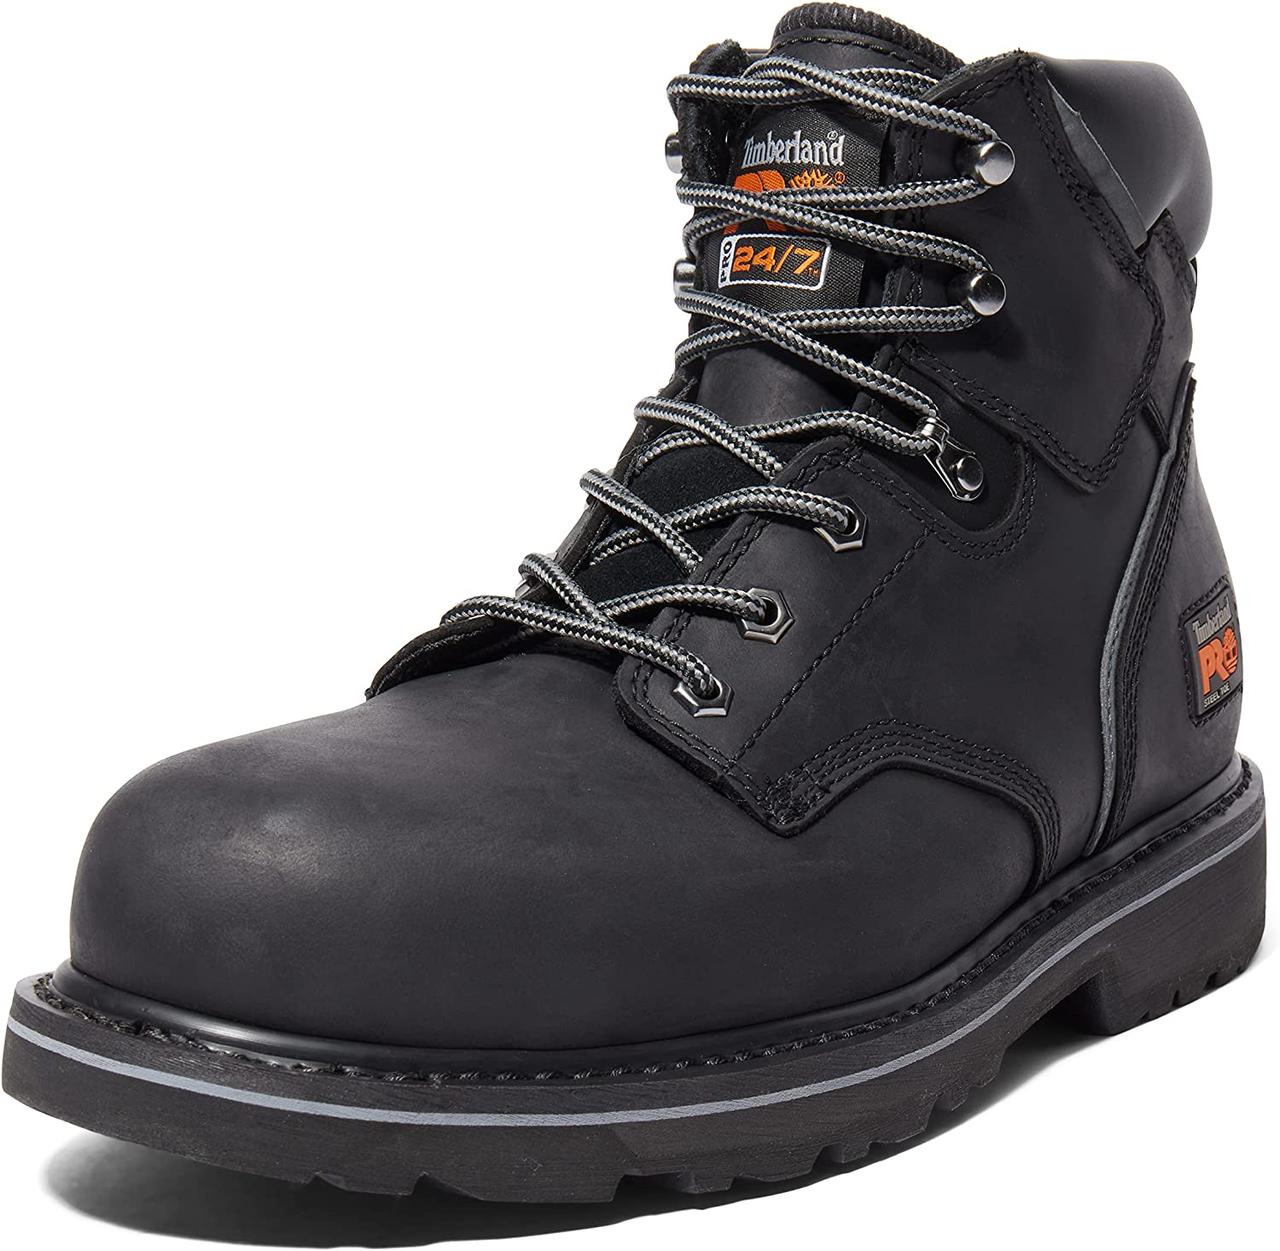 8 Black: Black Чоловічі промислові робочі черевики Pit Boss зі сталевим носком 6 Timberland PRO